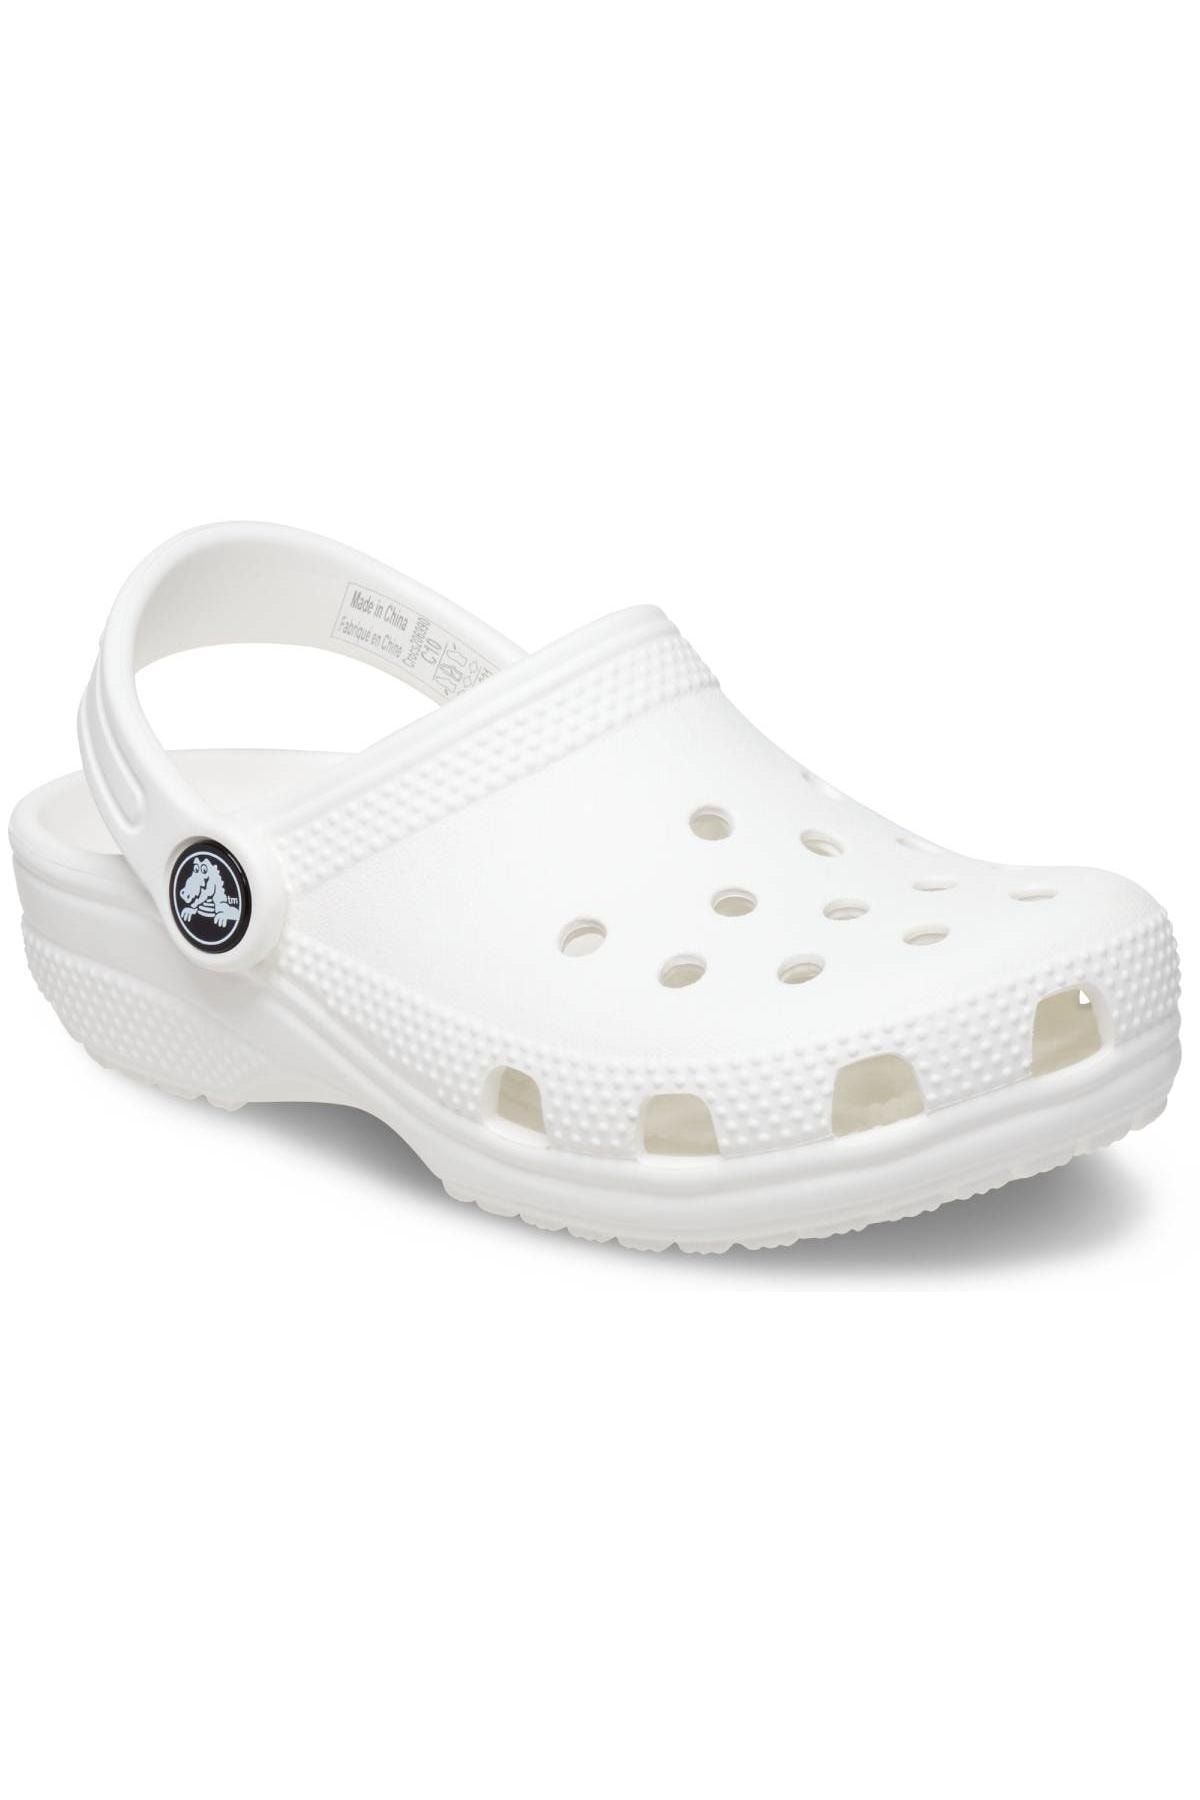 Crocs 206991 K Classic Clog K Beyaz Çocuk Terlik